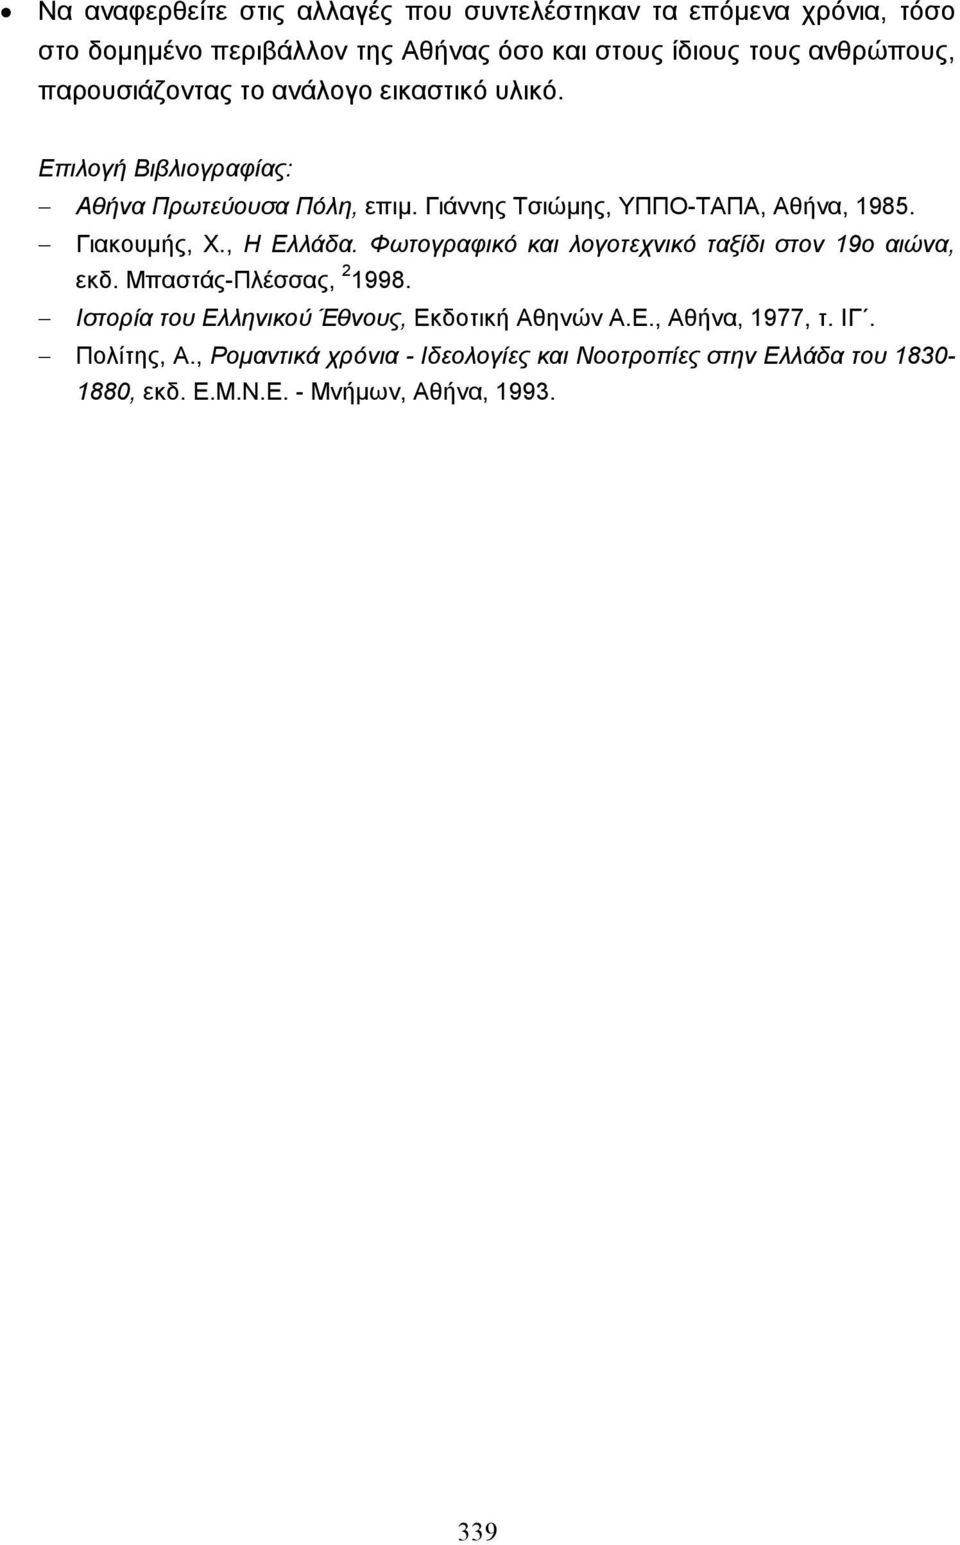 Γιακουµής, Χ., Η Ελλάδα. Φωτογραφικό και λογοτεχνικό ταξίδι στον 19ο αιώνα, εκδ. Μπαστάς-Πλέσσας, 2 1998.